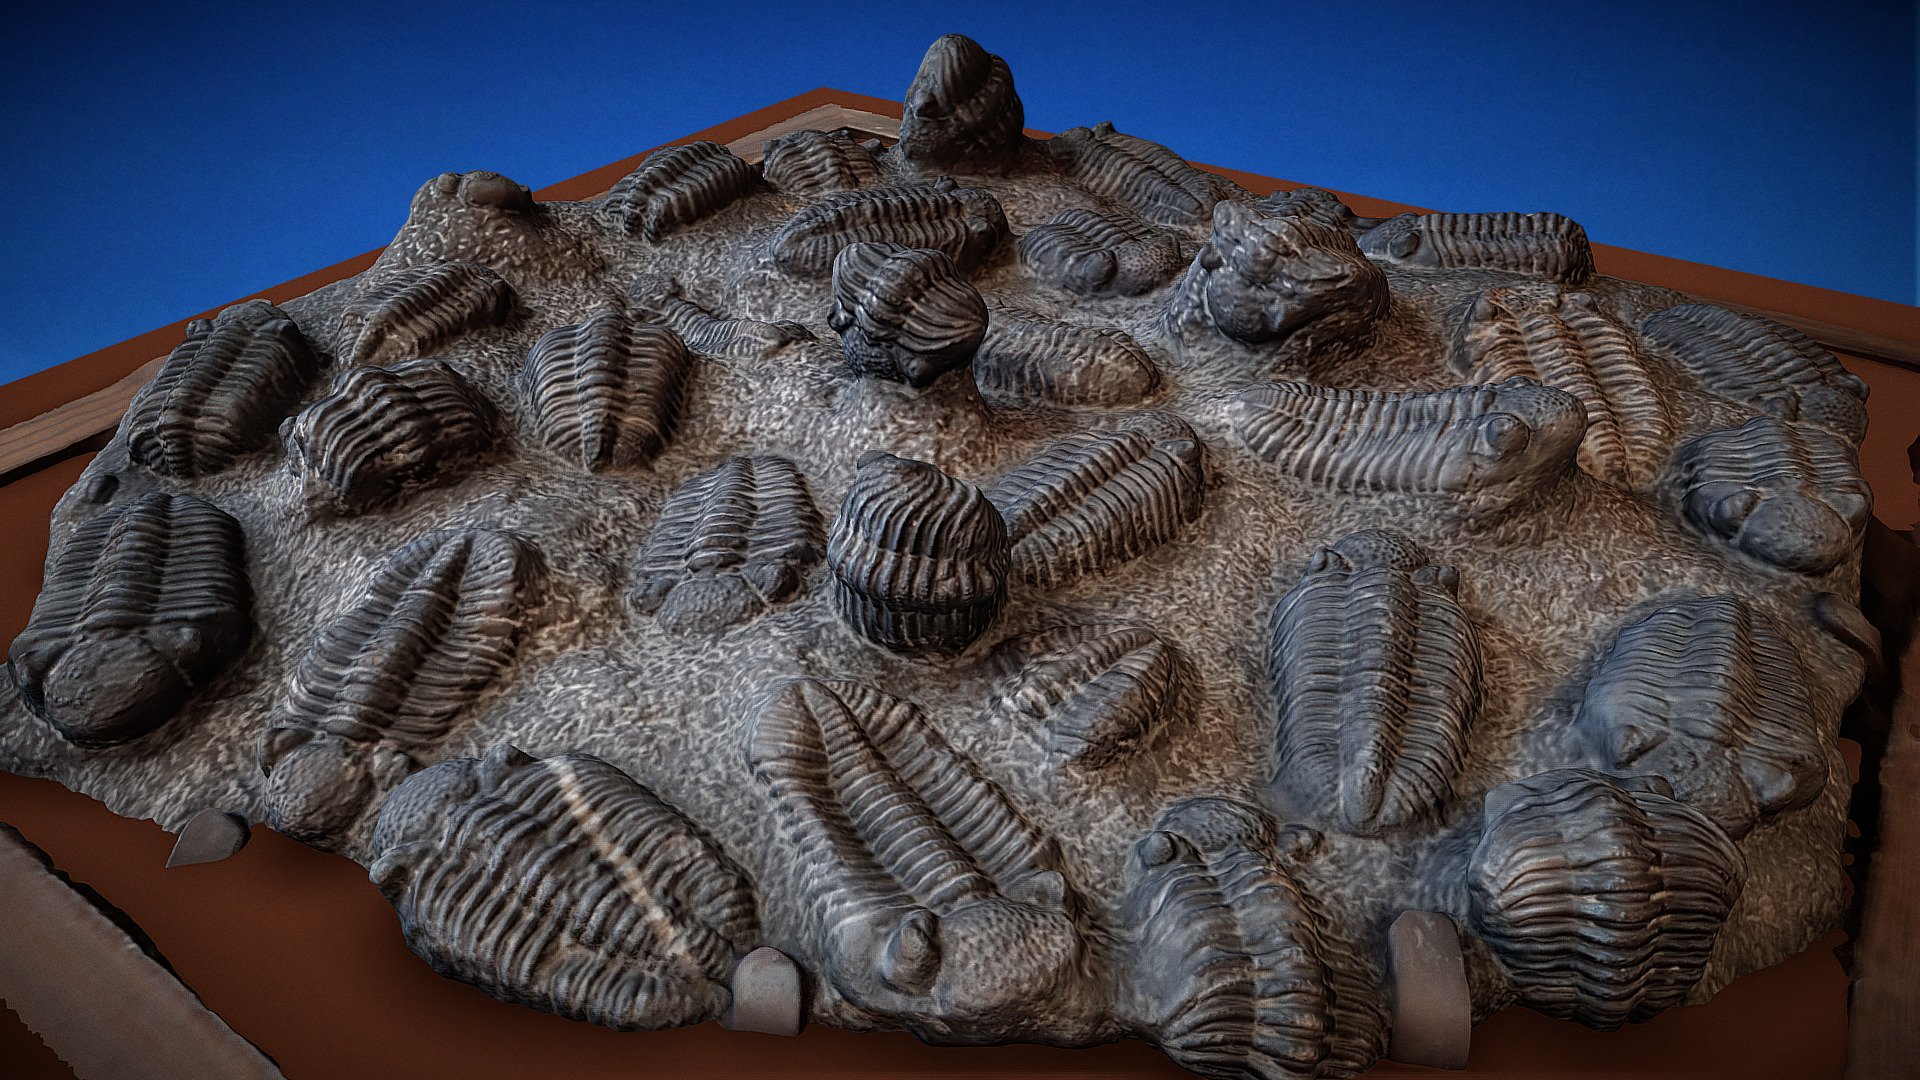 Los trilobites (Trilobita, del latín, «tres lóbulos») son una clase de artrópodos extintos, dentro del subfilo Trilobitomorpha. Son los fósiles más característicos de la Era Paleozoica (Era Primaria). Se han descrito casi 4.000 especies. Este fósil se encuentra expuesto en las rampas de bajada de las instalaciones de Cosmocaixa, en Barcelona, el museo de la Ciencia de la Fundación la Caixa.

Trilobites (Trilobita, from Latin, &ldquo;three lobes